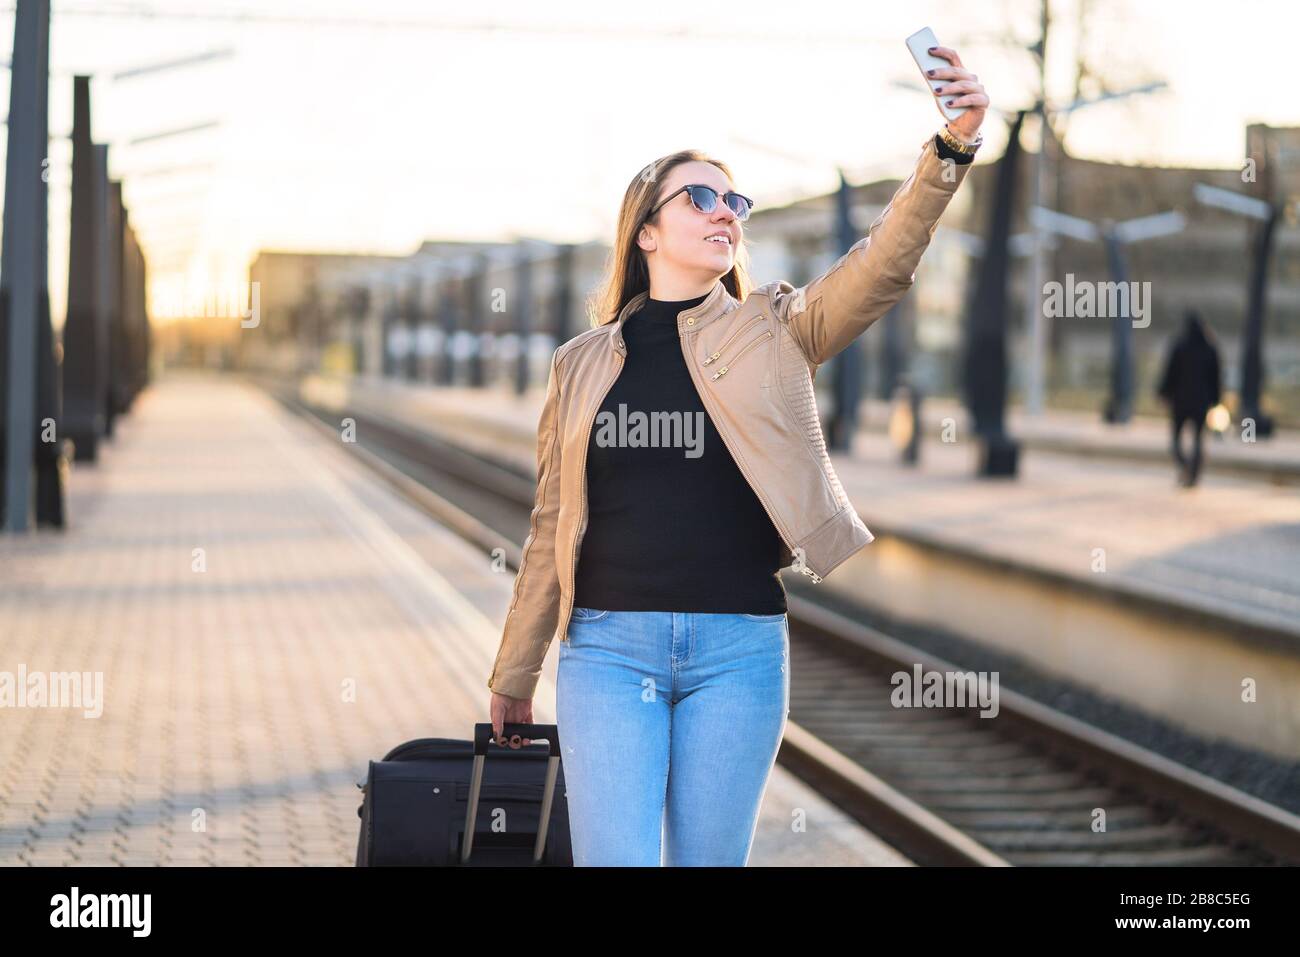 Frau nimmt selfie mit Handy im Bahnsteig am Bahnhof. Lächelnde und fröhliche Dame, die mit Smartphone fotografiert. Stockfoto